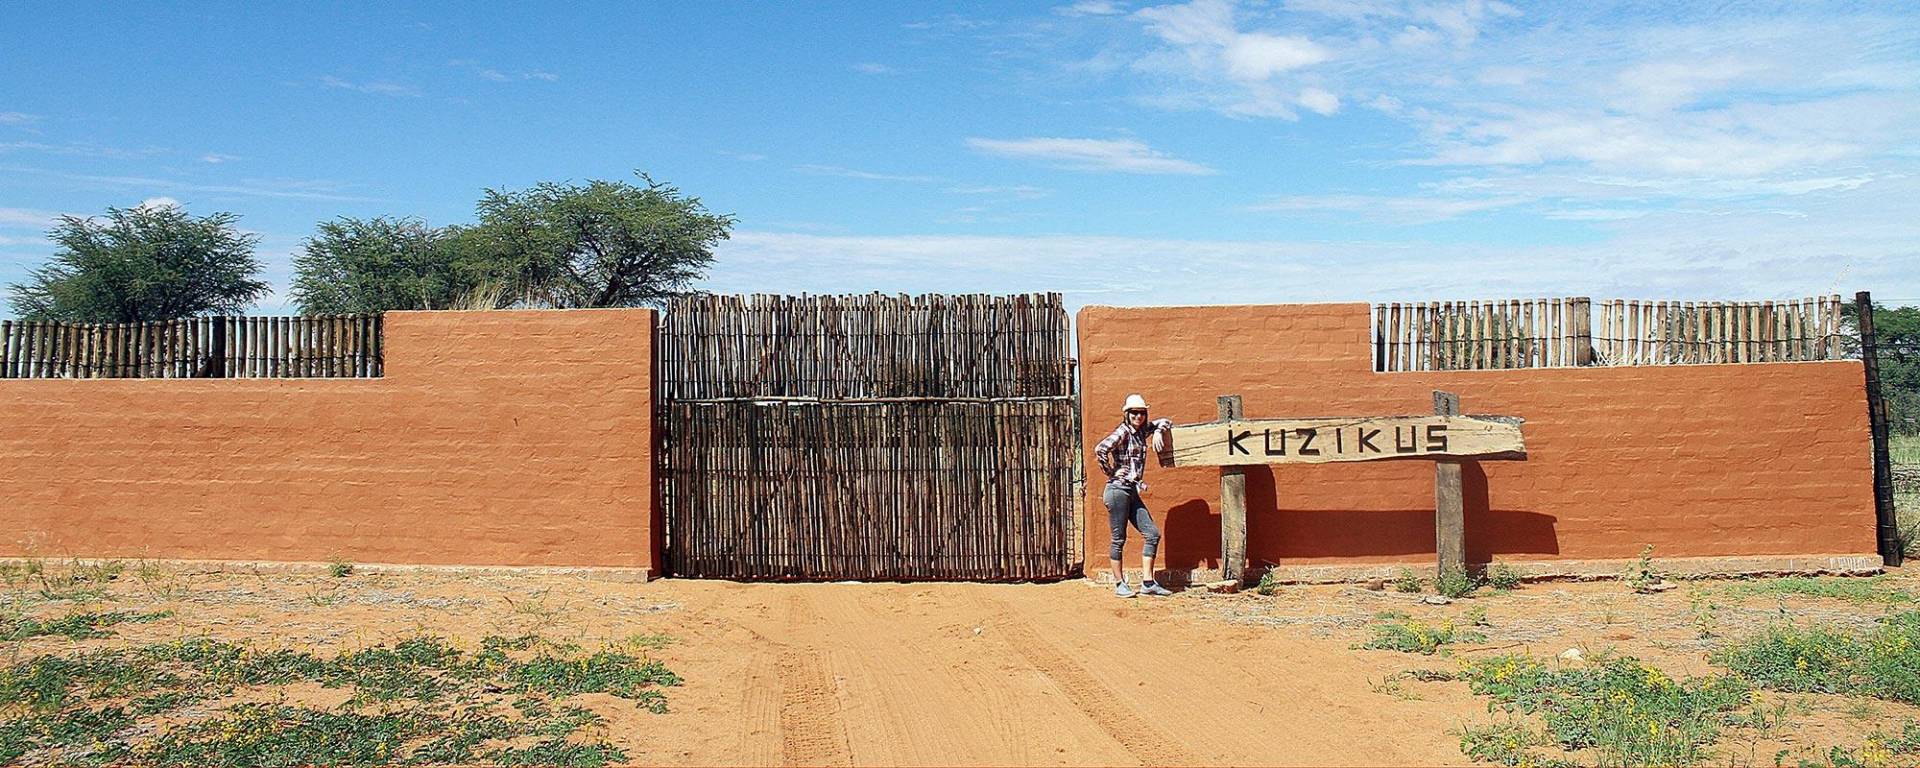 Kuzikus Eingangstor in der Kalahari